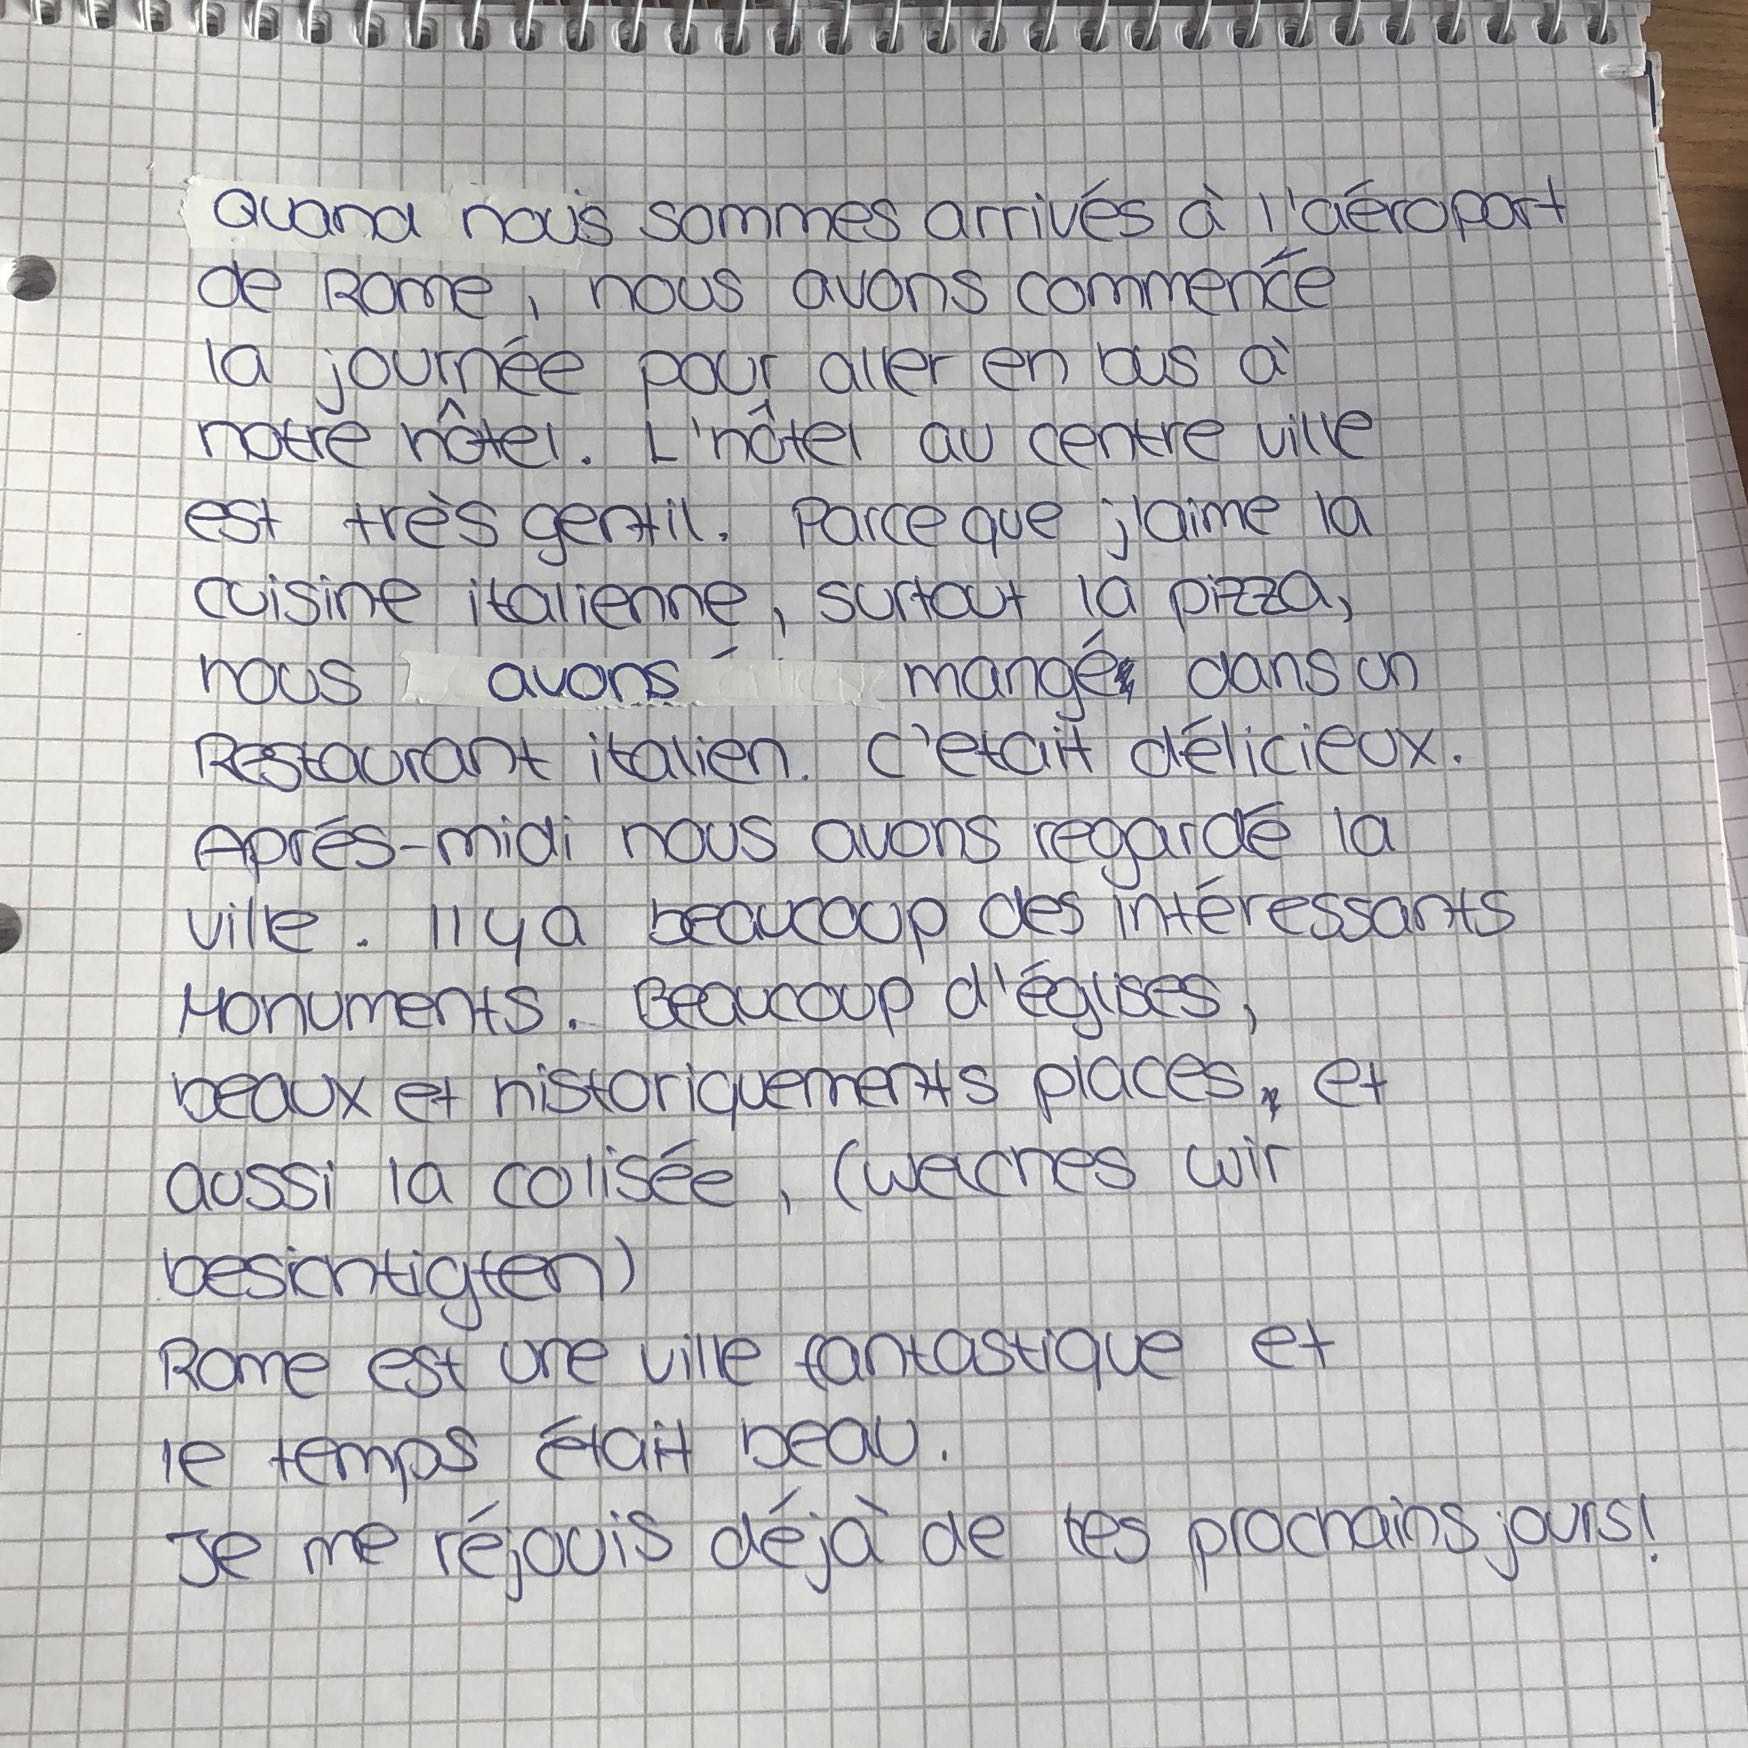 Französisch Text verbessern da ich nicht gut Französisch kann? (Schule